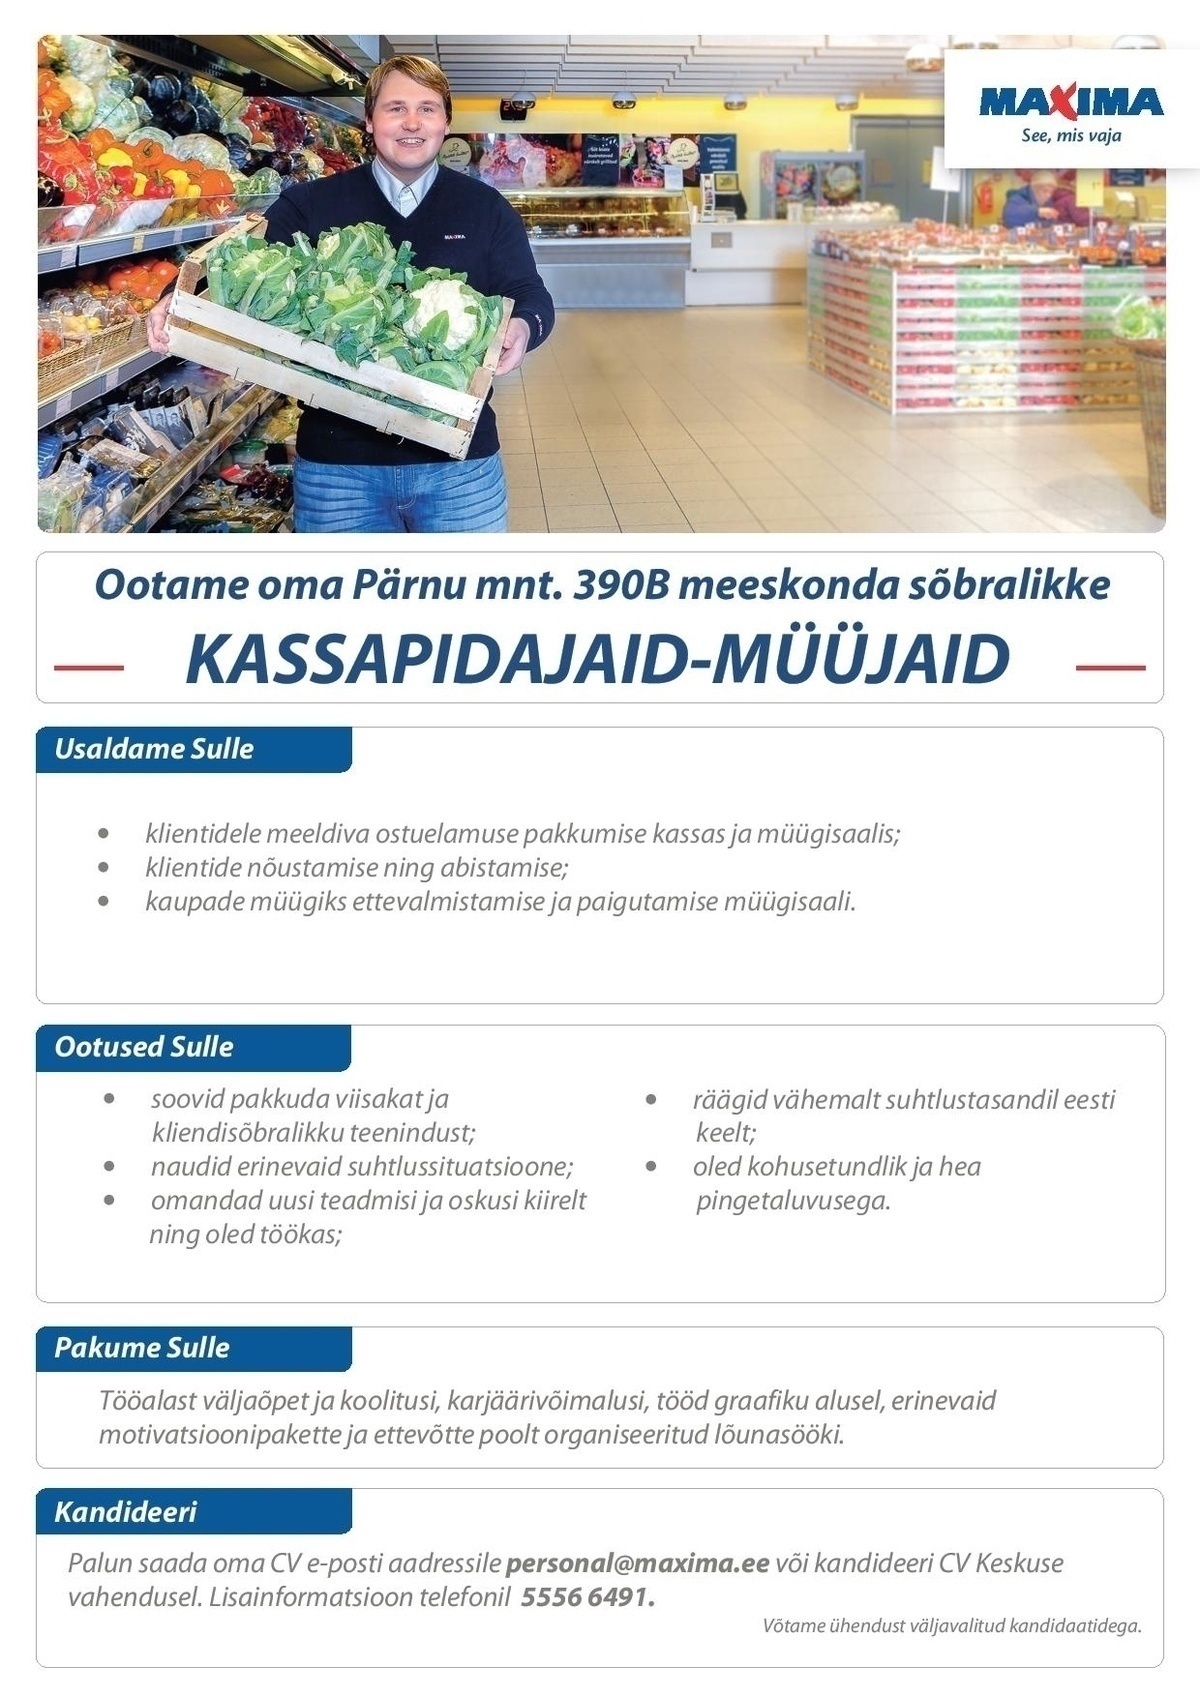 Maxima Eesti OÜ Kassapidaja-müüja Tallinna Maximas 